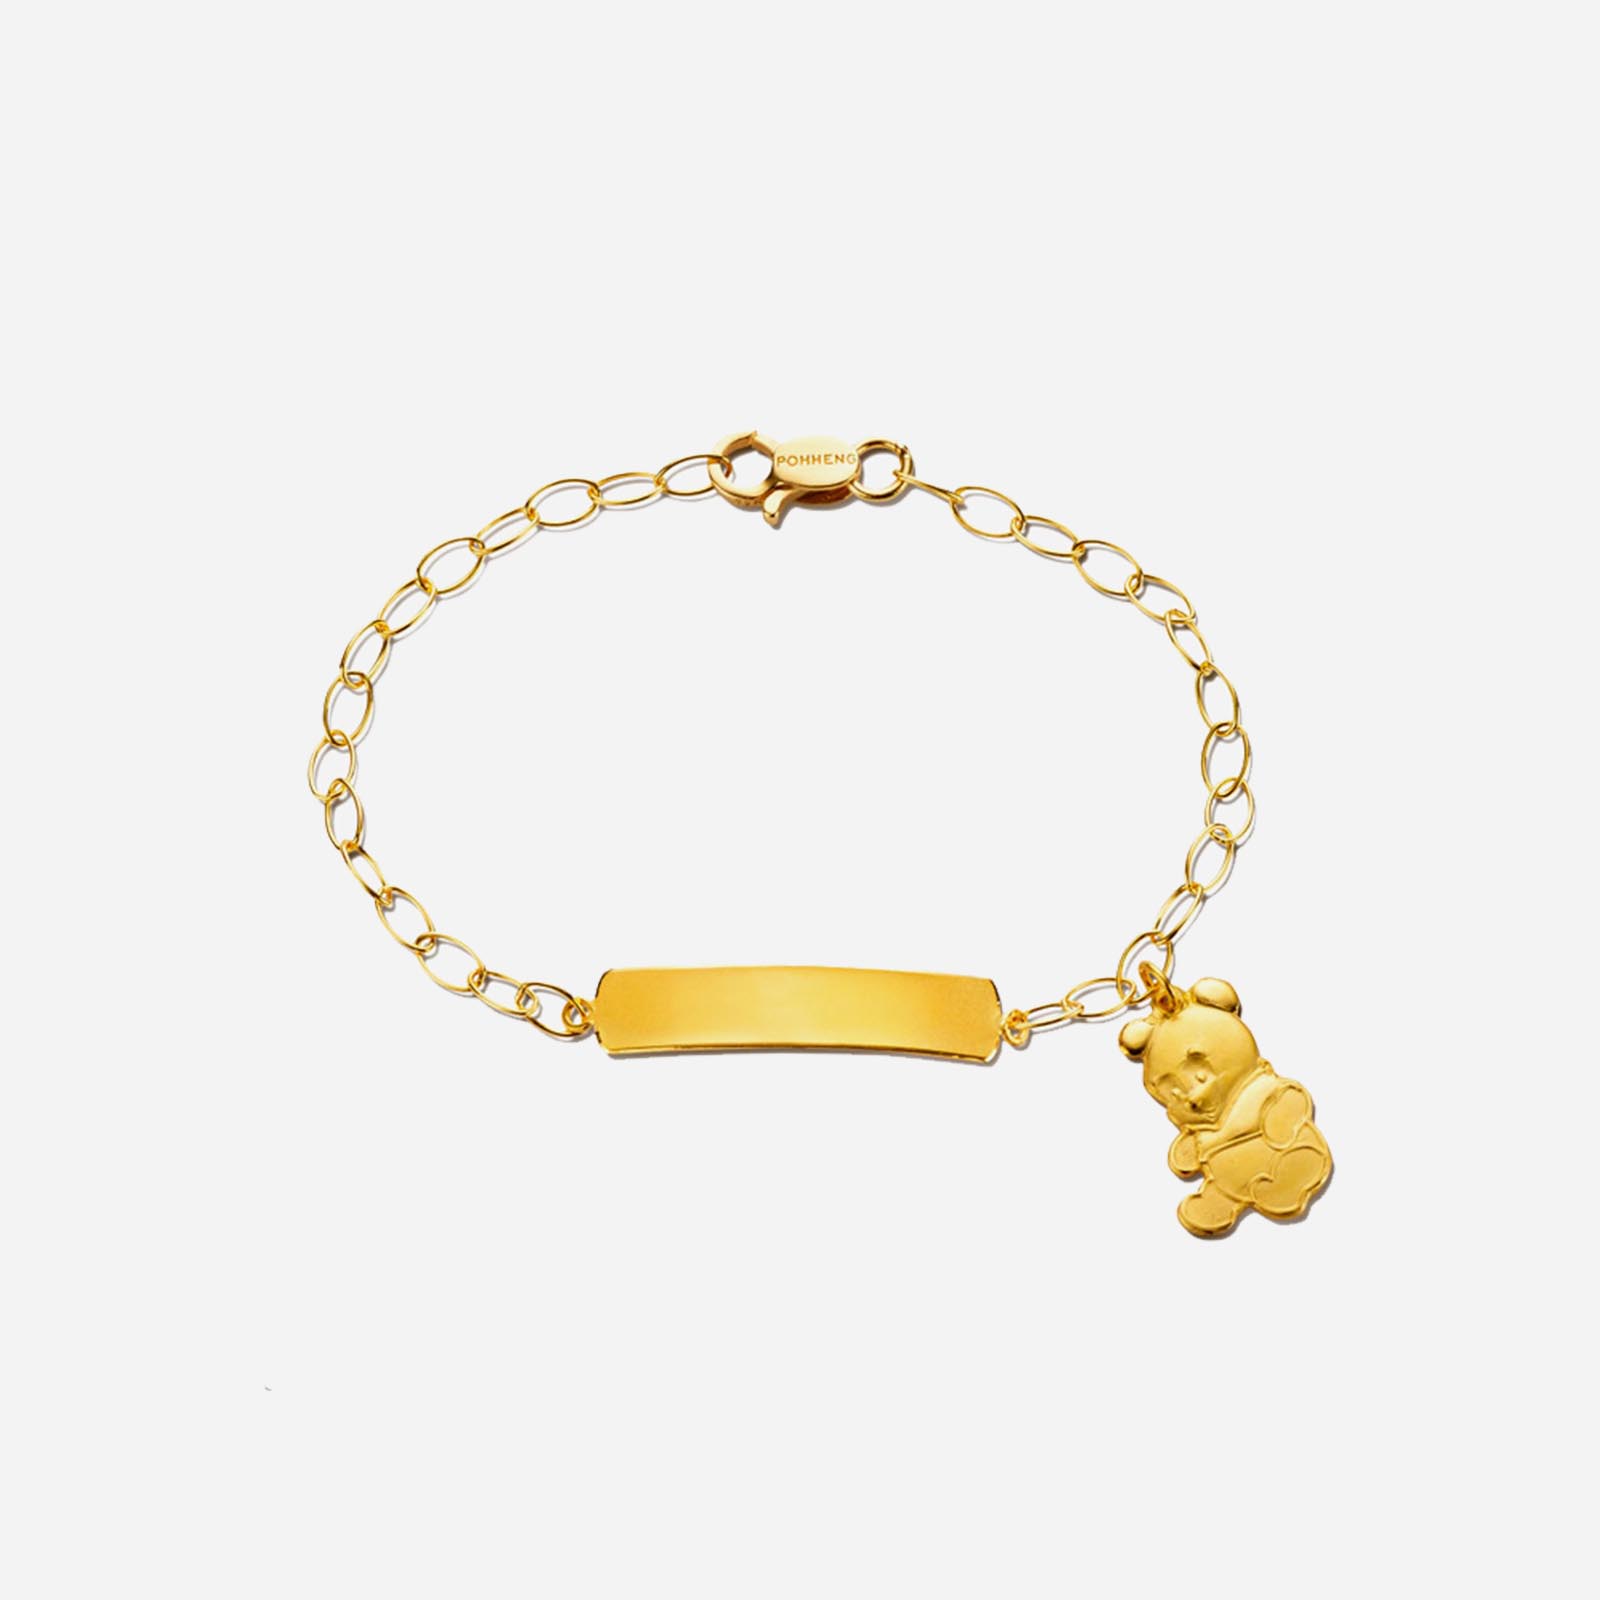 Poh Heng Disney Baby Pooh Name Bracelet in 22K Yellow Gold	